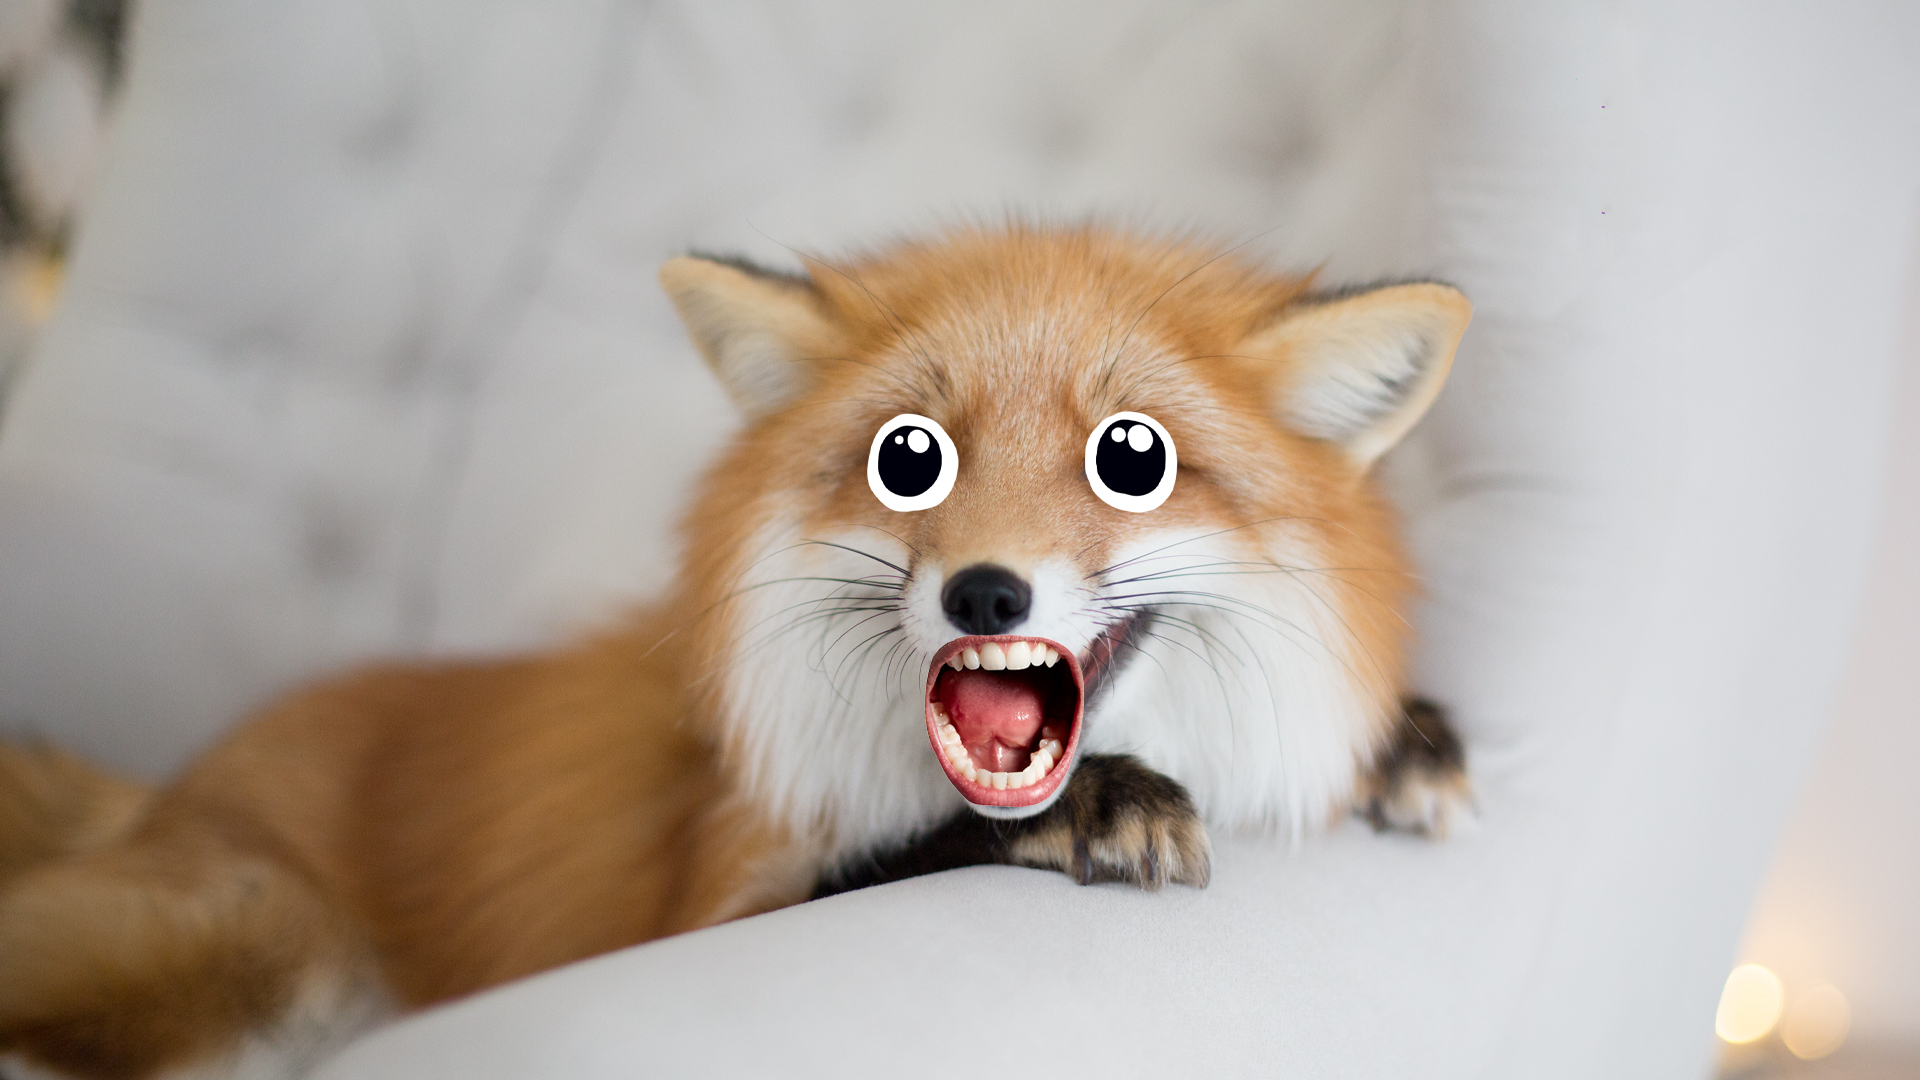 A shouting fox